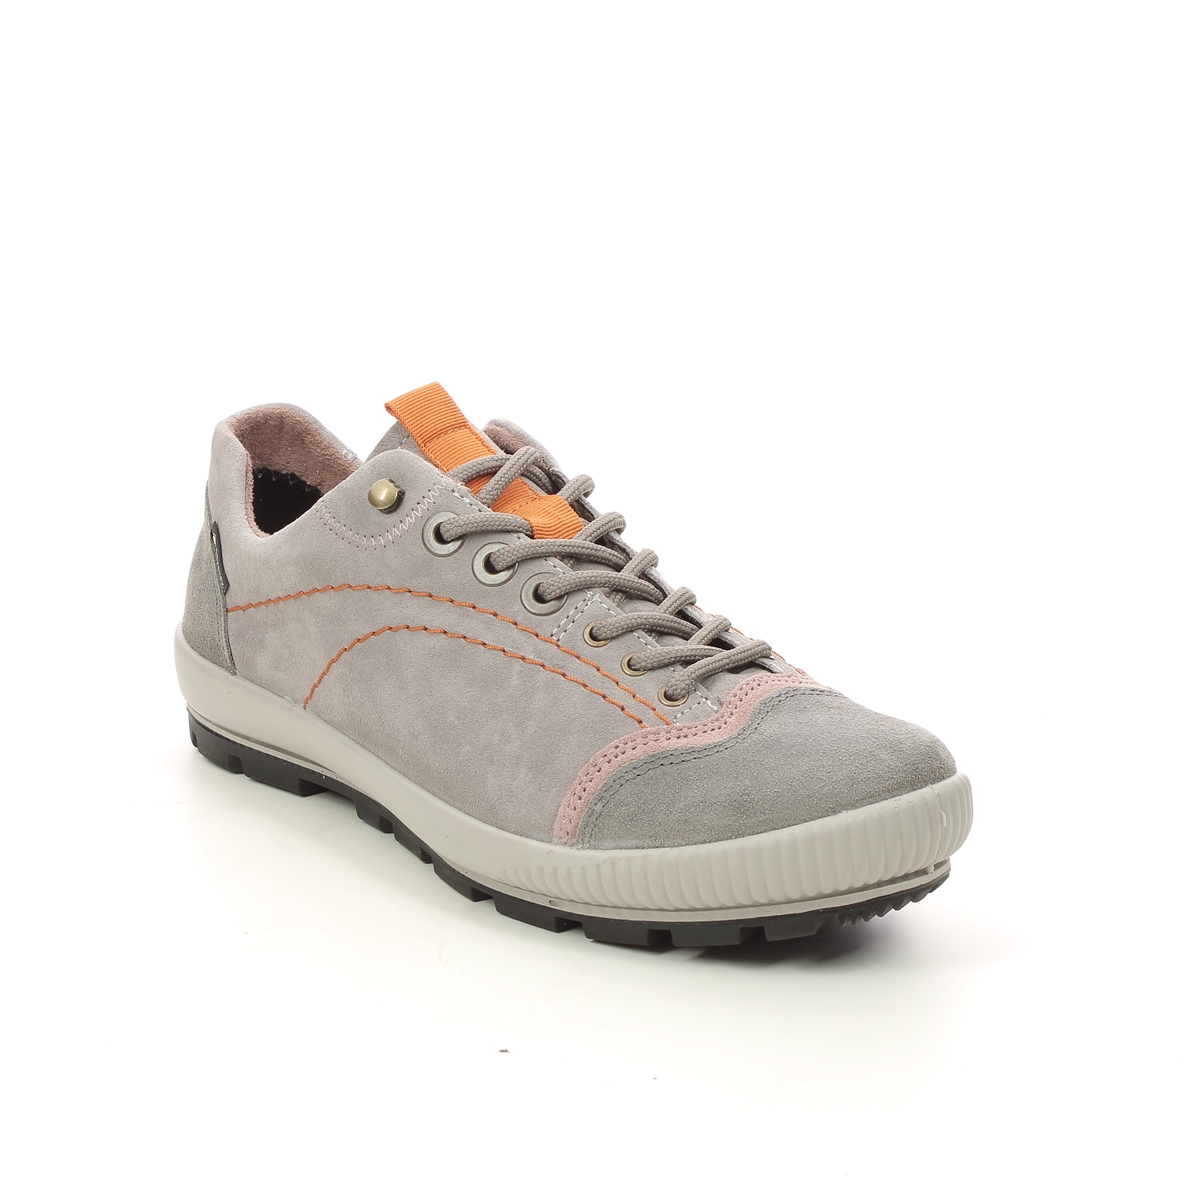 Legero Tanaro Trek Gtx Light Grey Suede Womens Walking Shoes 2000122-2900 In Size 7.5 In Plain Light Grey Suede